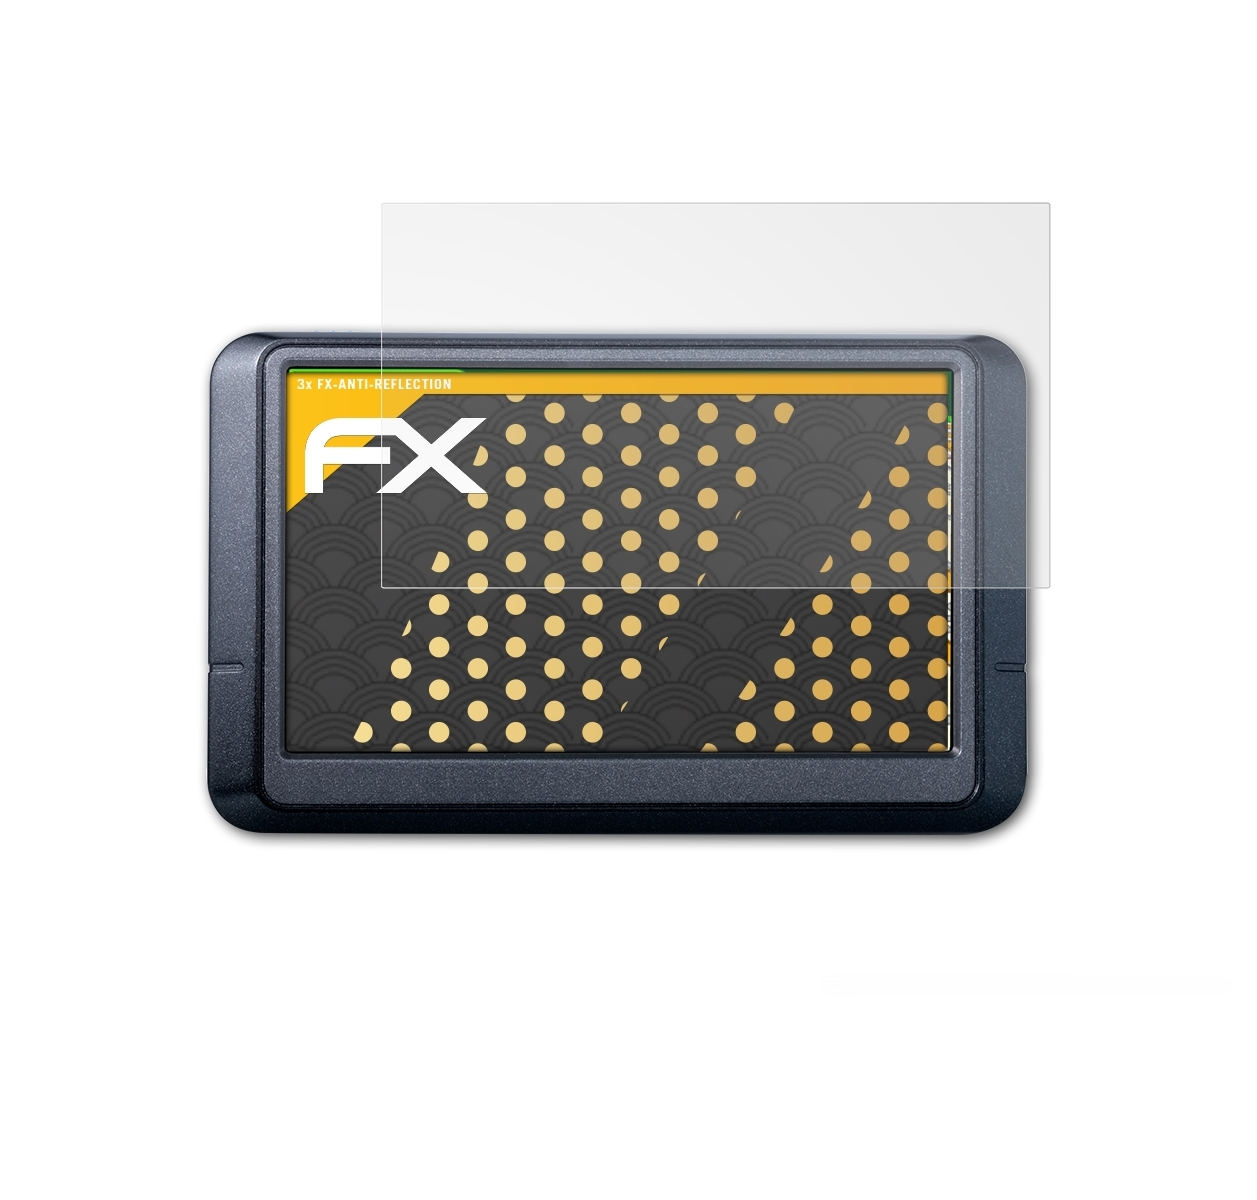 255W) Displayschutz(für ATFOLIX Garmin FX-Antireflex nüvi 3x